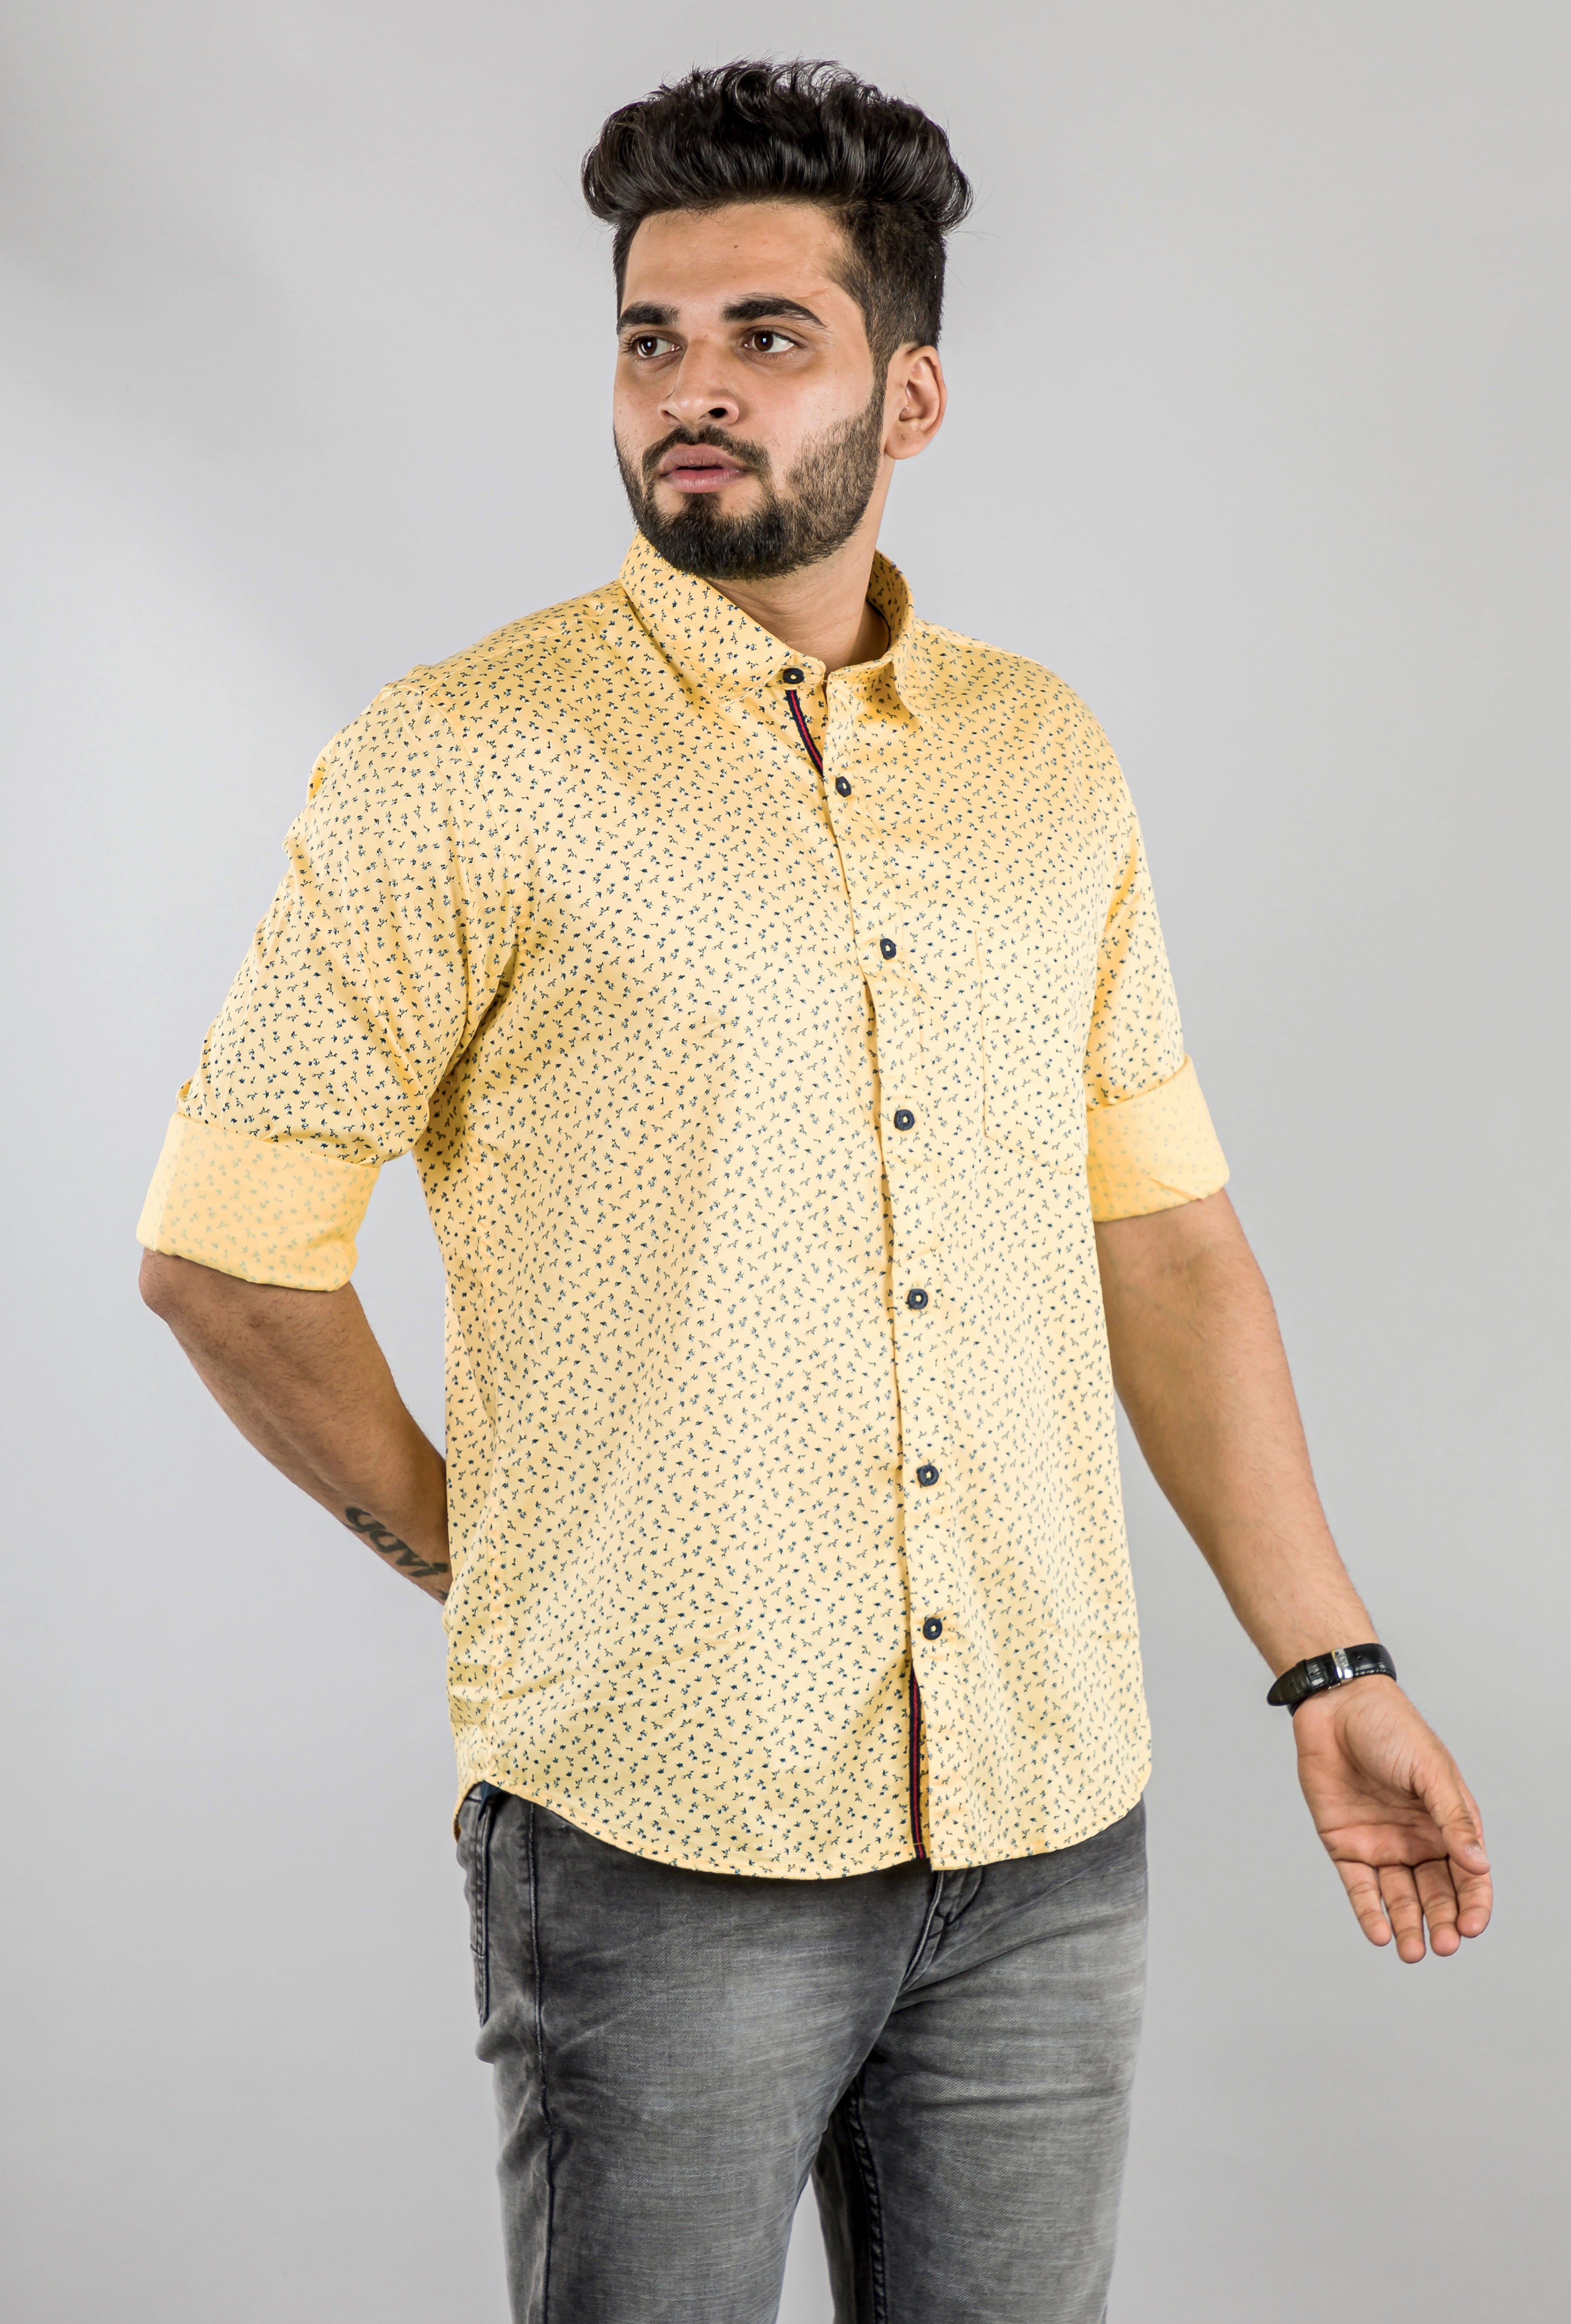 Men's Lemon Yellow Printed Shirt